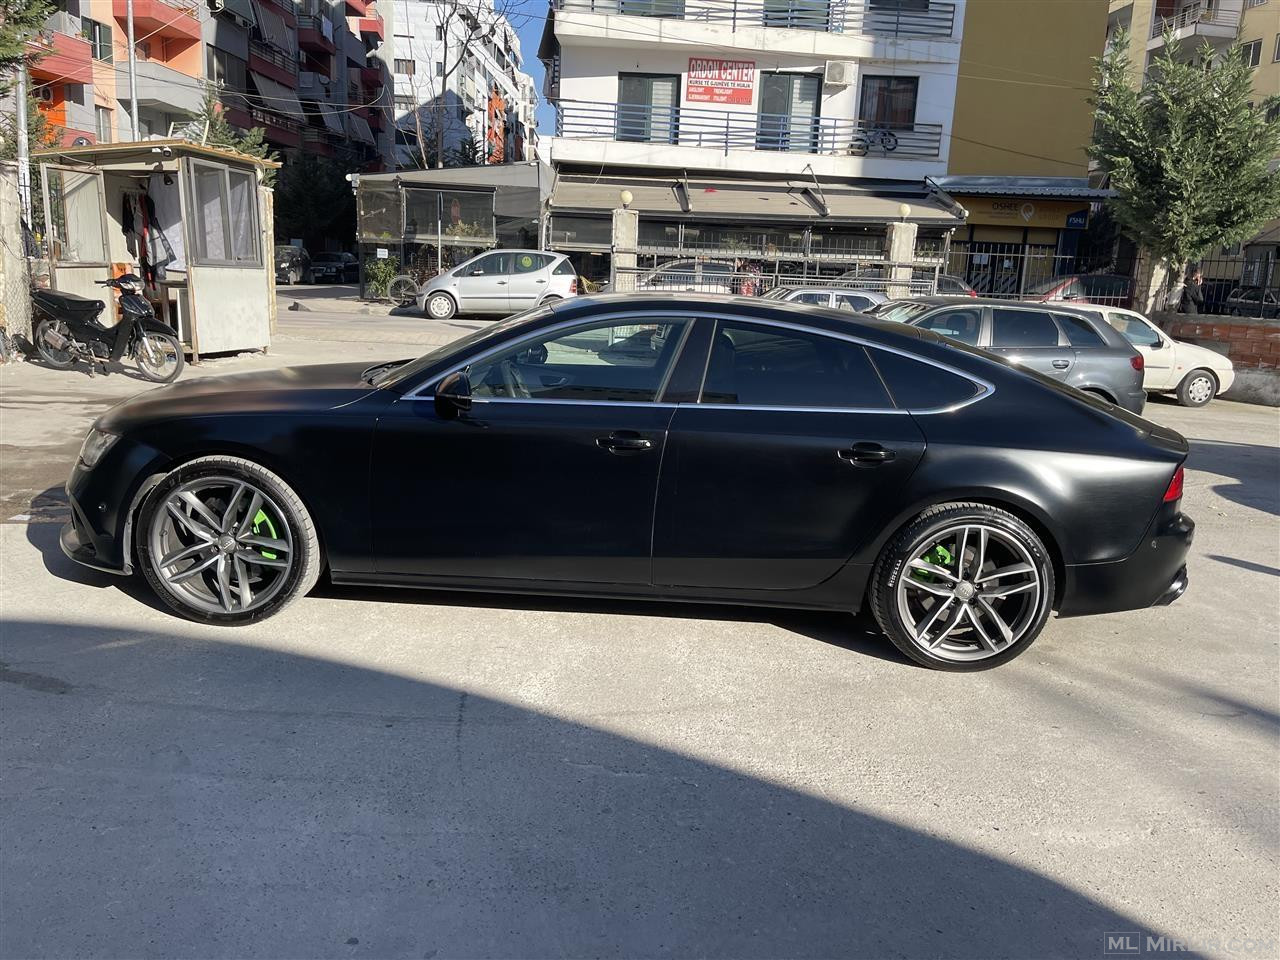 Audi A7 BiTdi 313